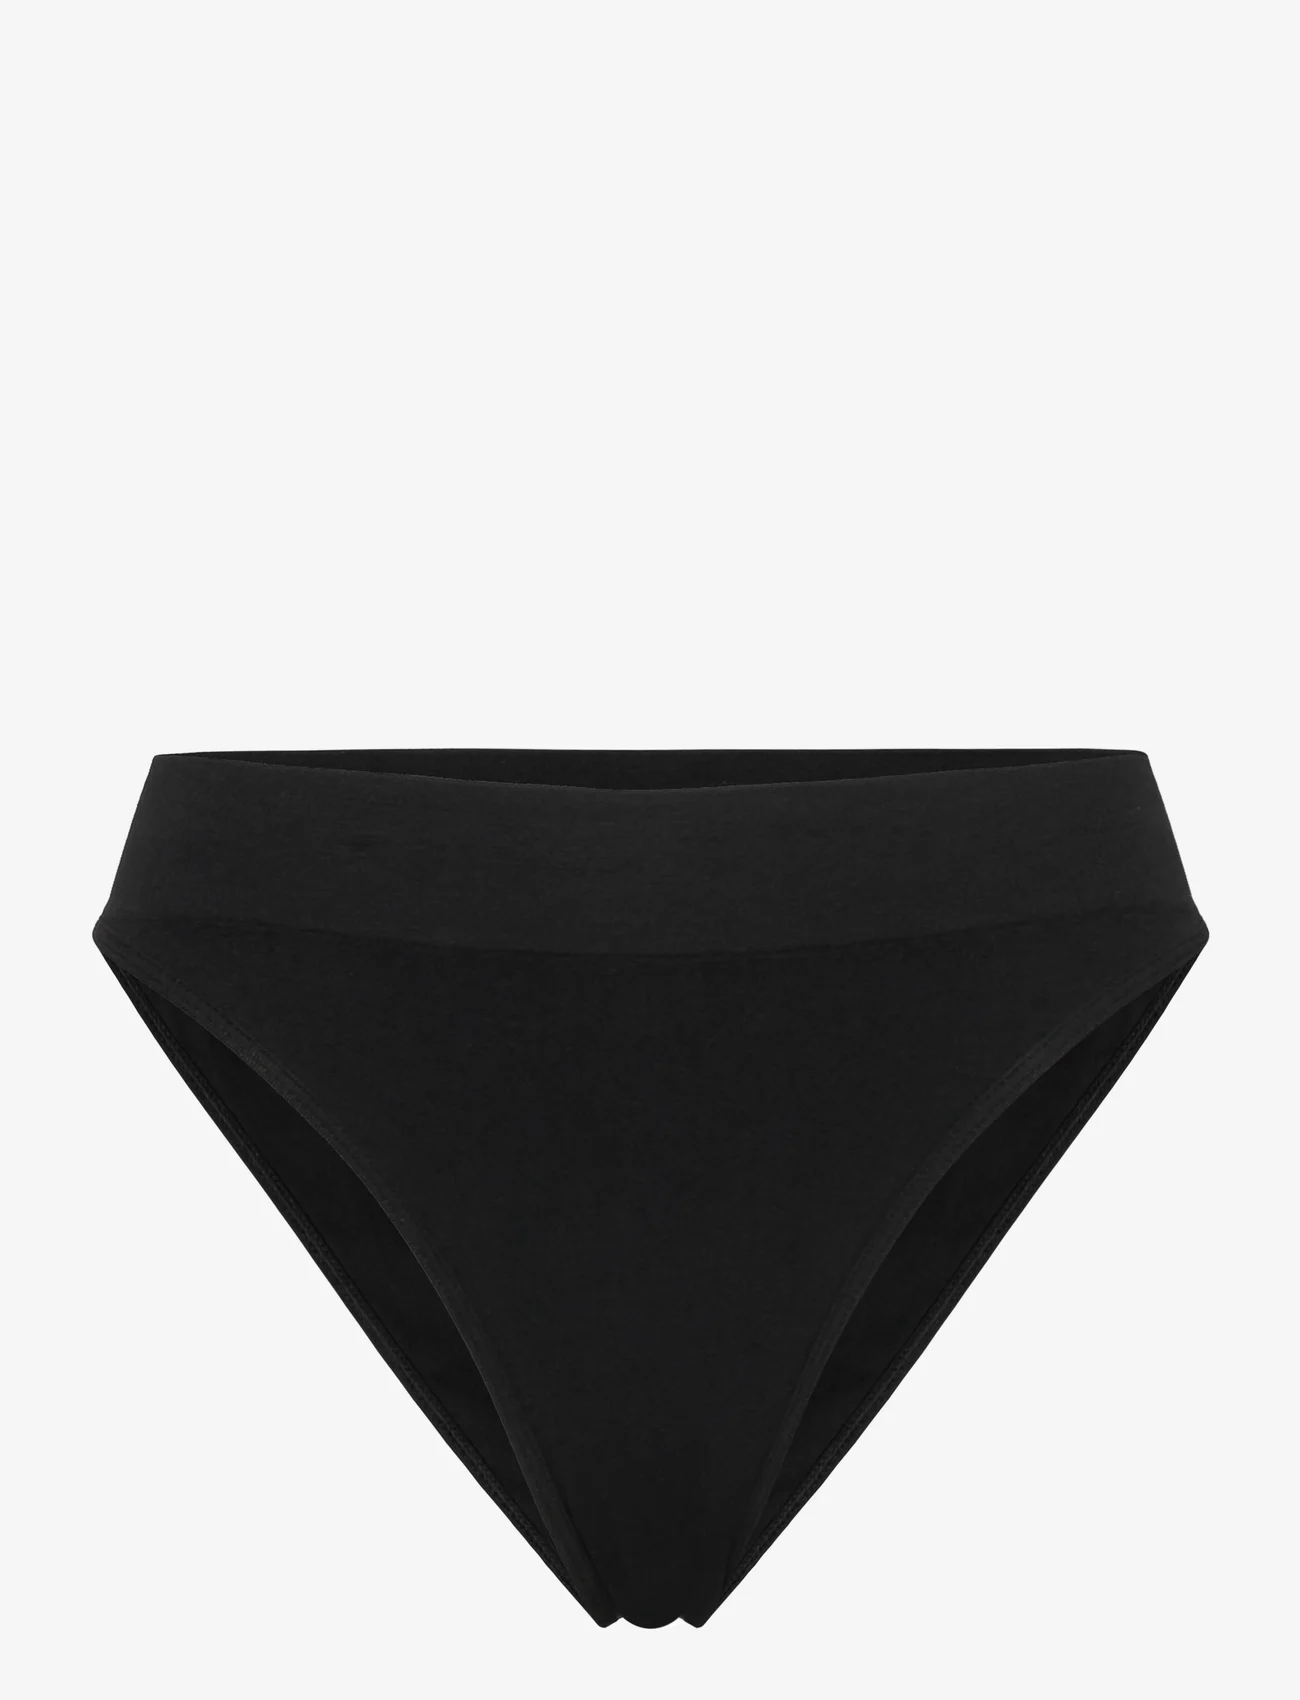 Calvin Klein - HIGH WAIST BIKINI - korkeavyötäröiset bikinihousut - pvh black - 0